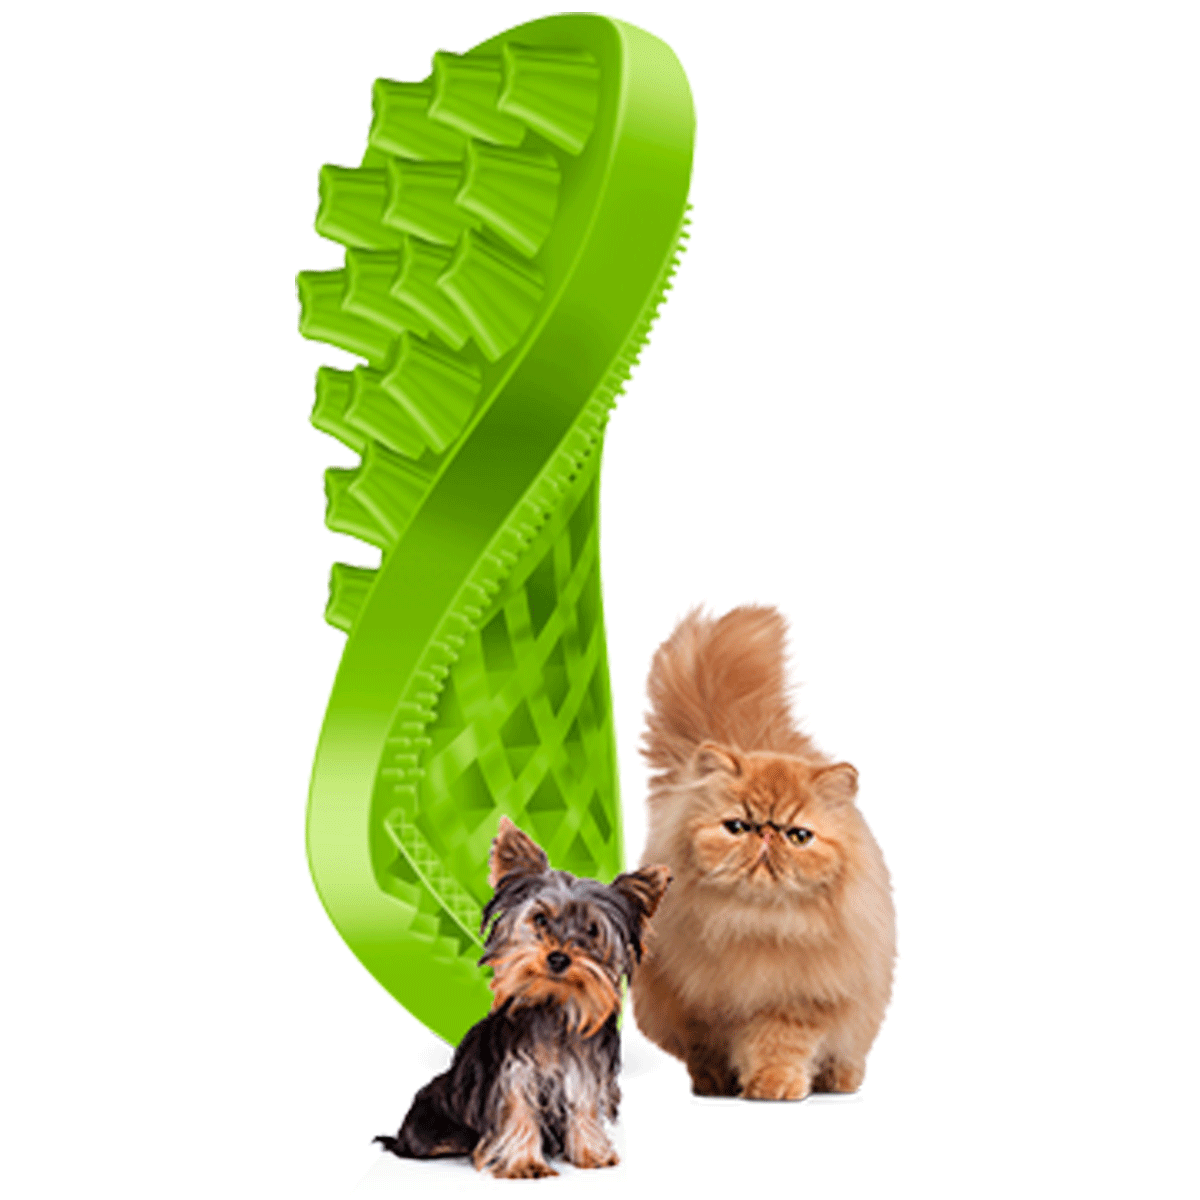 Brosse pour animaux en silicone pet+me vert